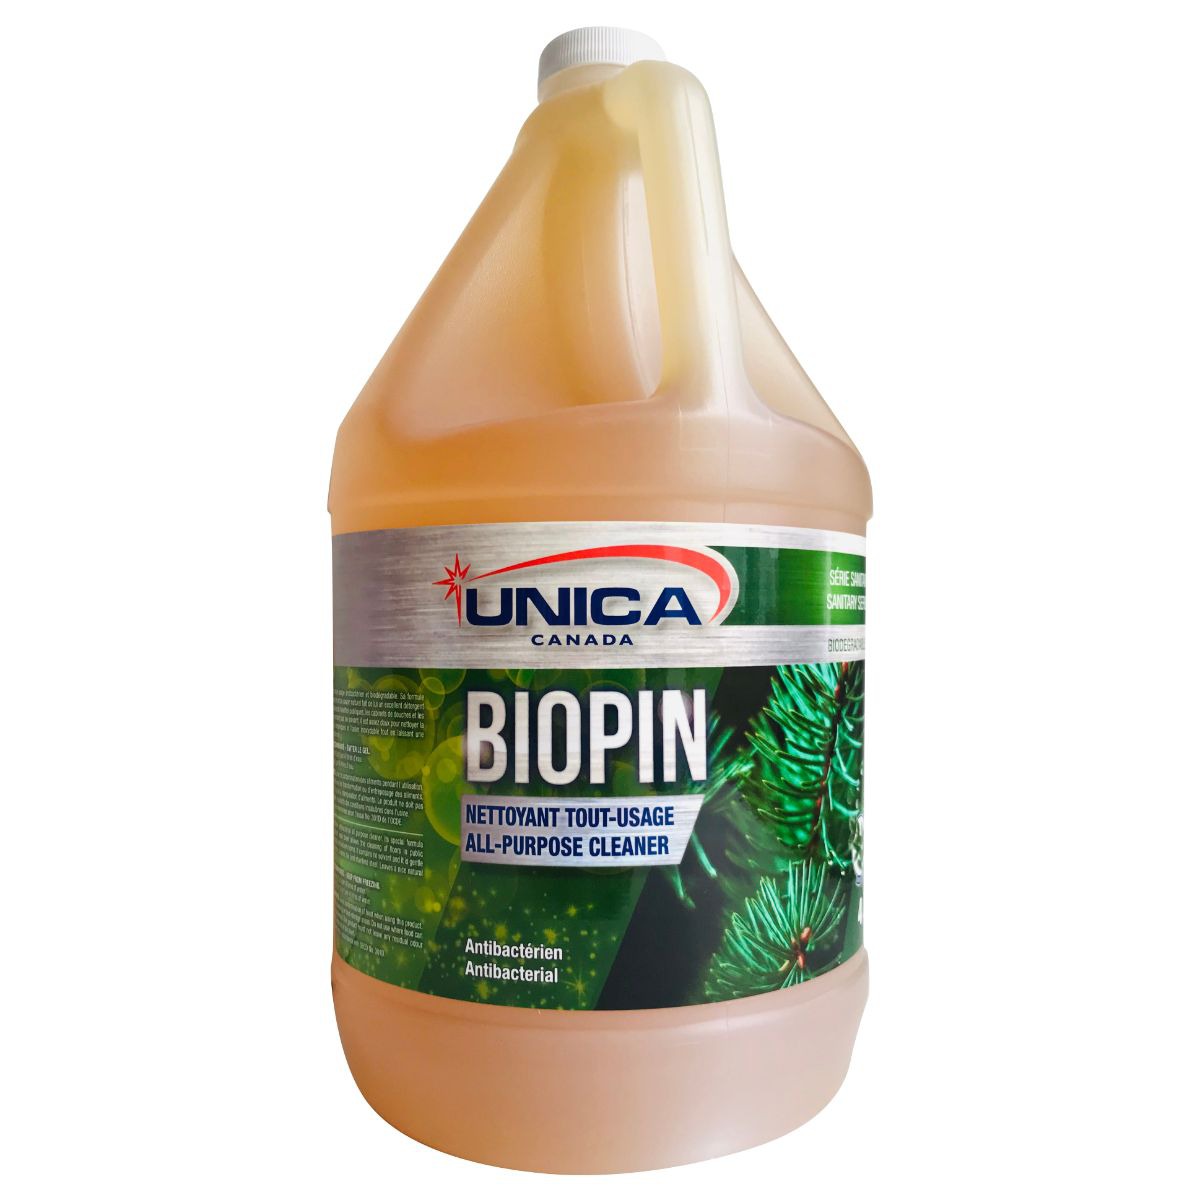 Biopin